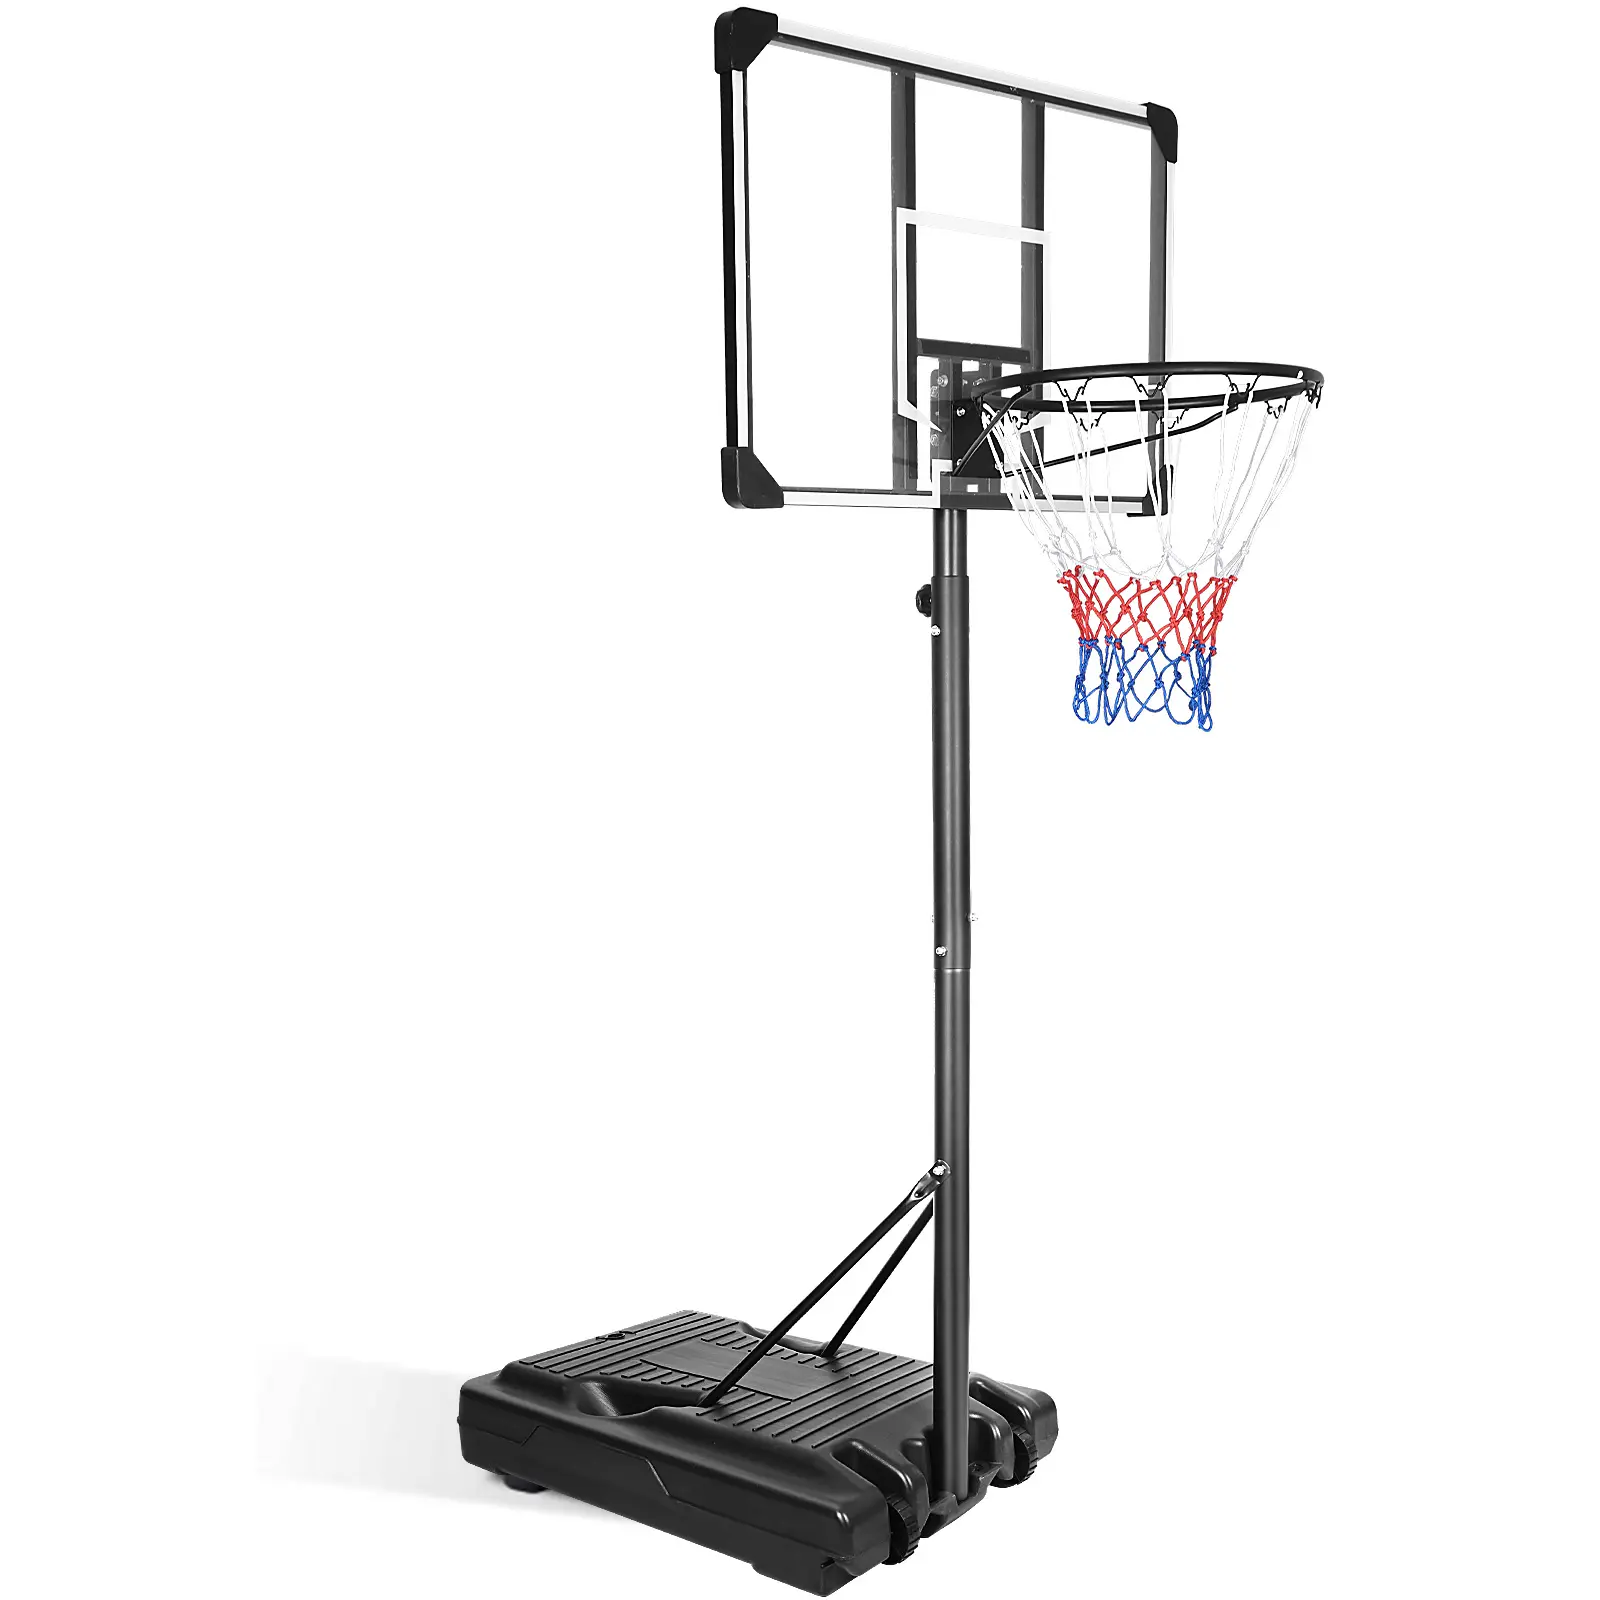 スポーツポータブルバスケットボールフープシステムスタンド高さ調節可能36インチバックボード屋内屋外バスケットボールゴールゲームプレイセット